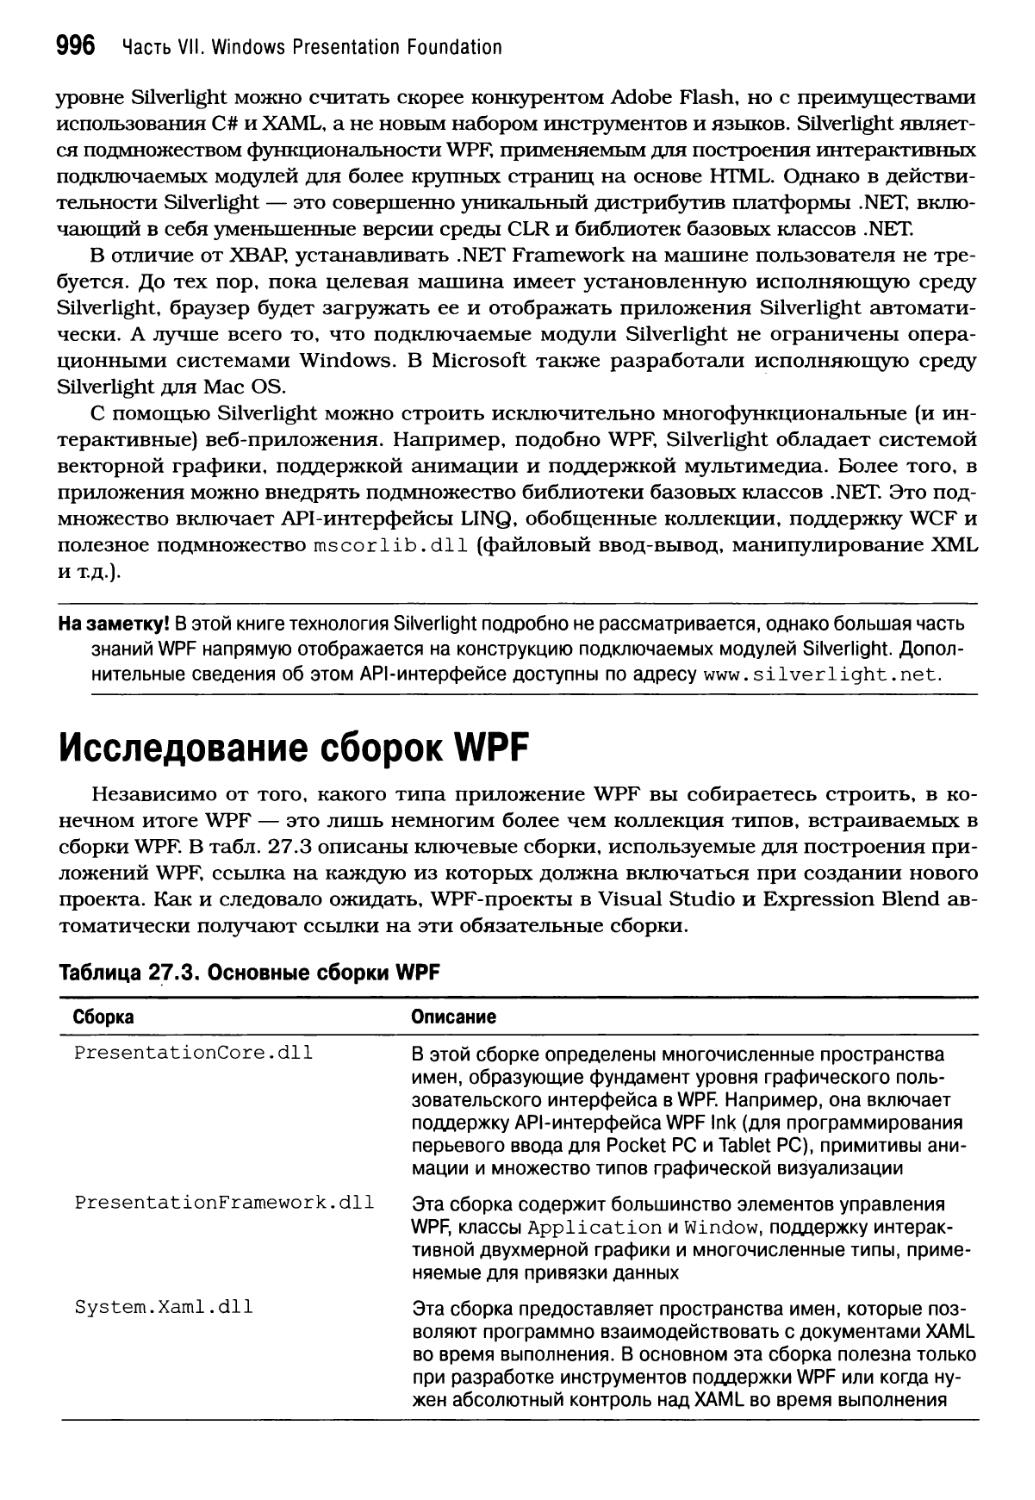 Исследование сборок WPF